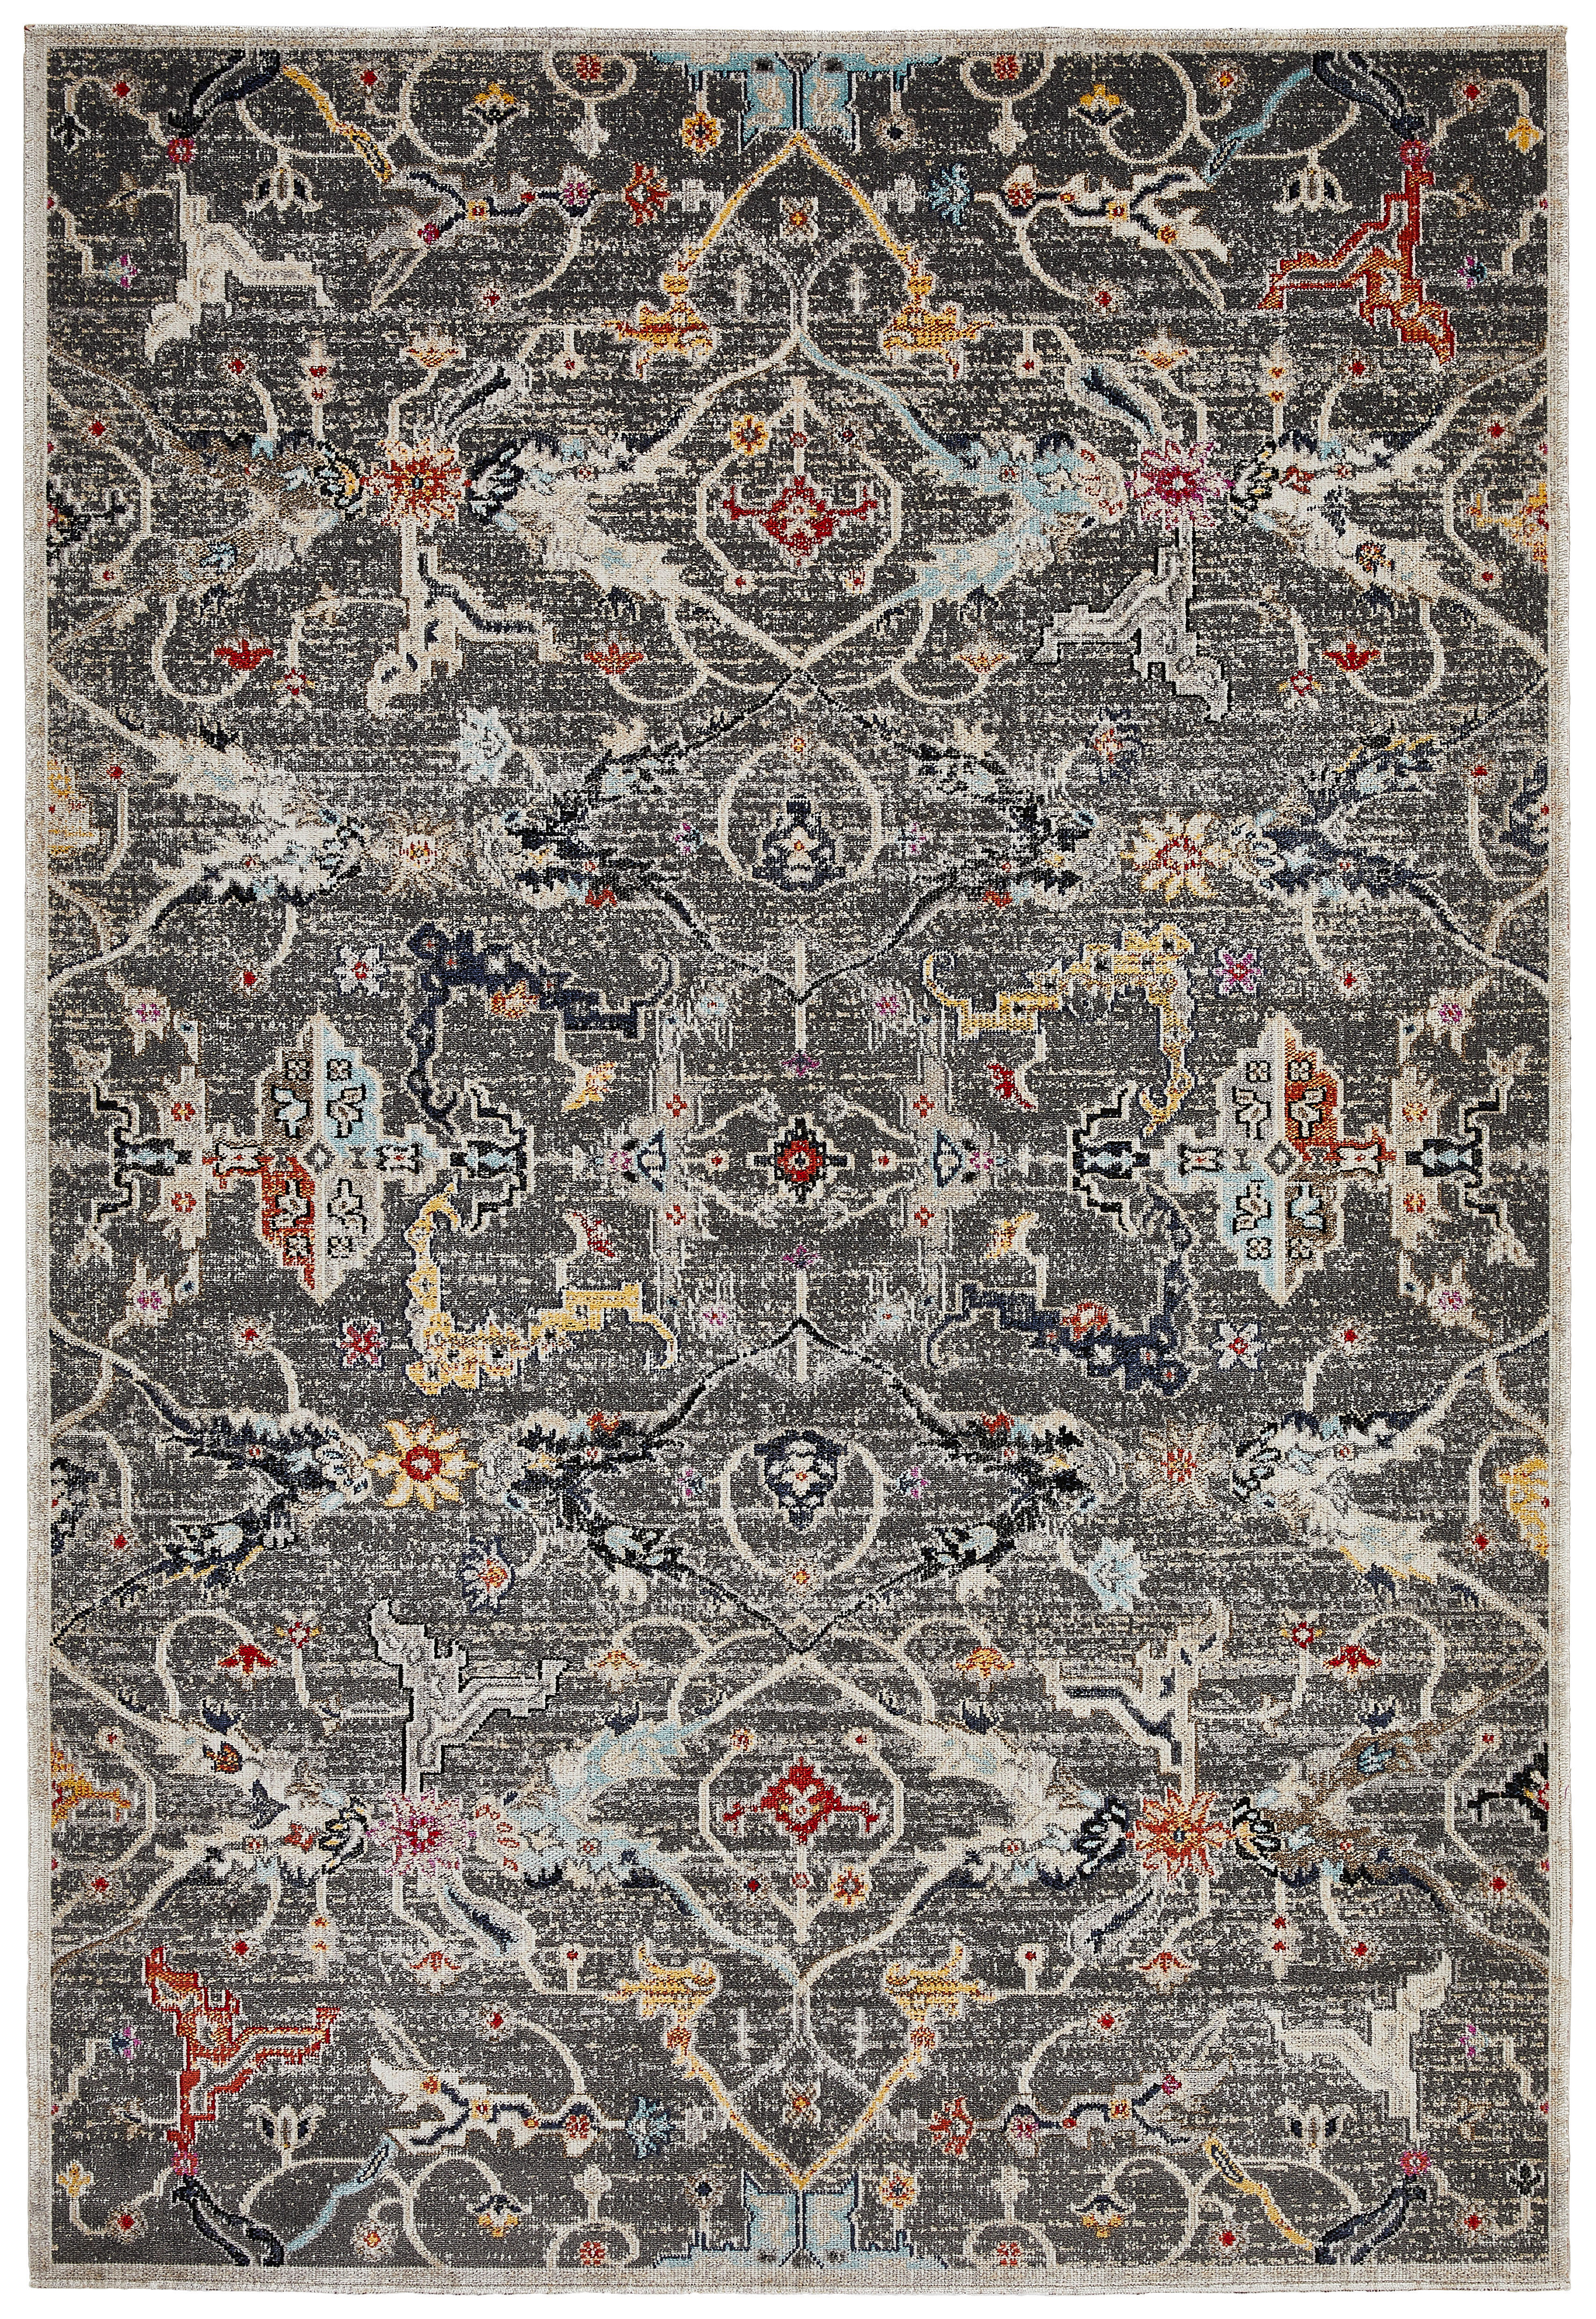 OUTDOORTEPPICH 133/190 cm  - Multicolor, Design, Naturmaterialien/Textil (133/190cm) - Novel